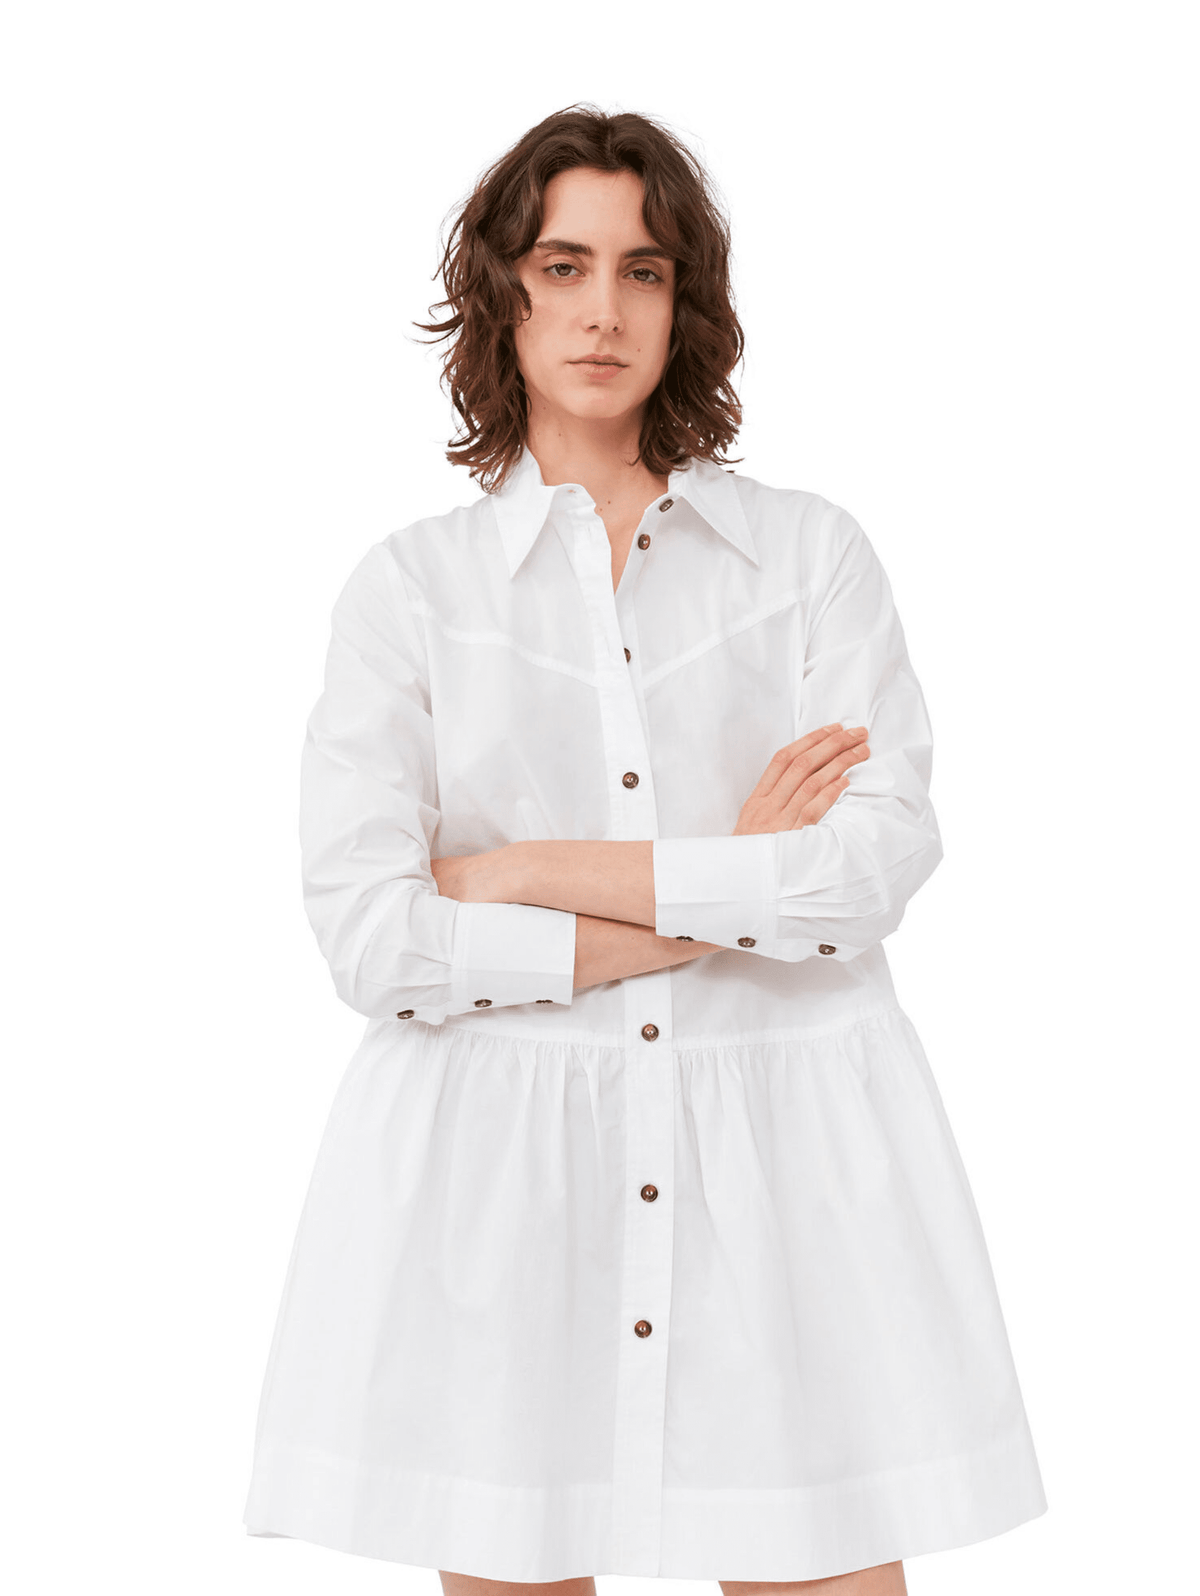 Cotton Poplin Mini Shirt Dress / Bright White Womens GANNI 